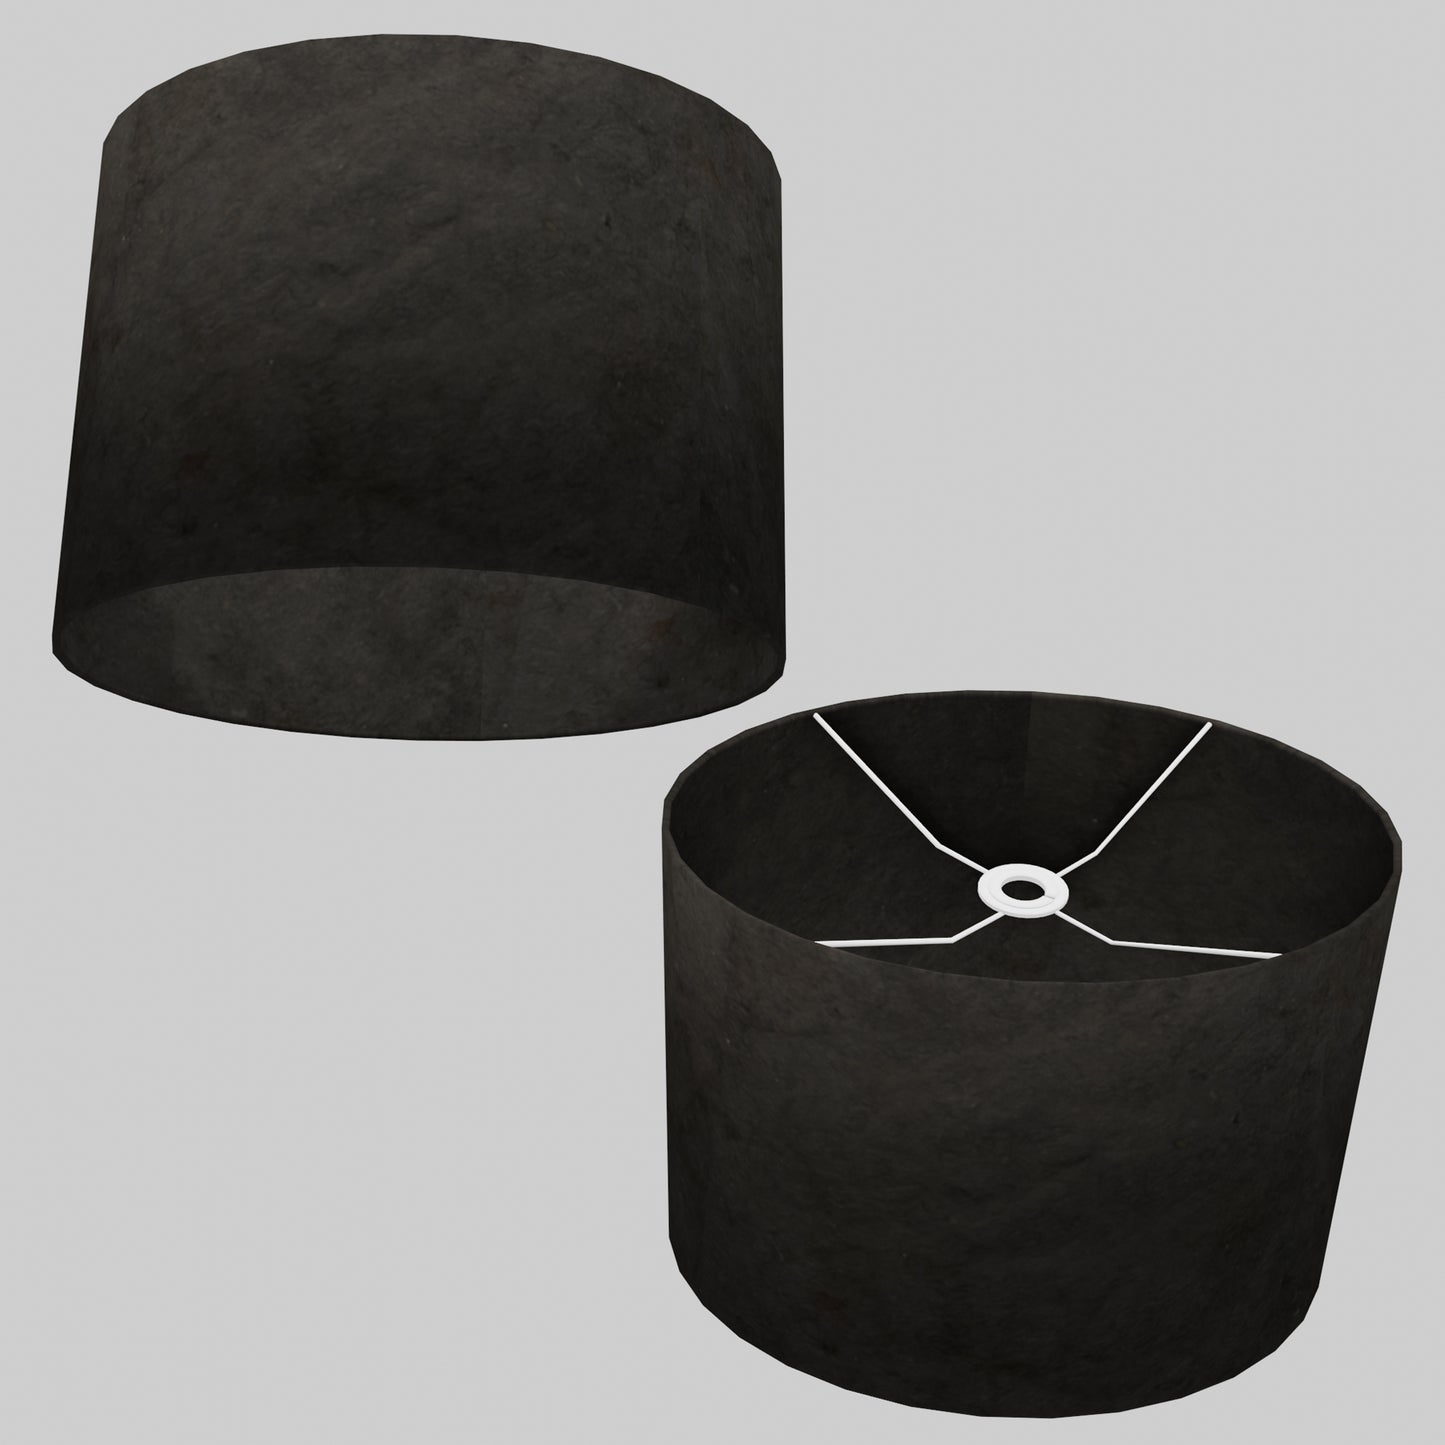 Oval Lamp Shade - P55 - Black Lokta, 40cm(w) x 30cm(h) x 30cm(d)